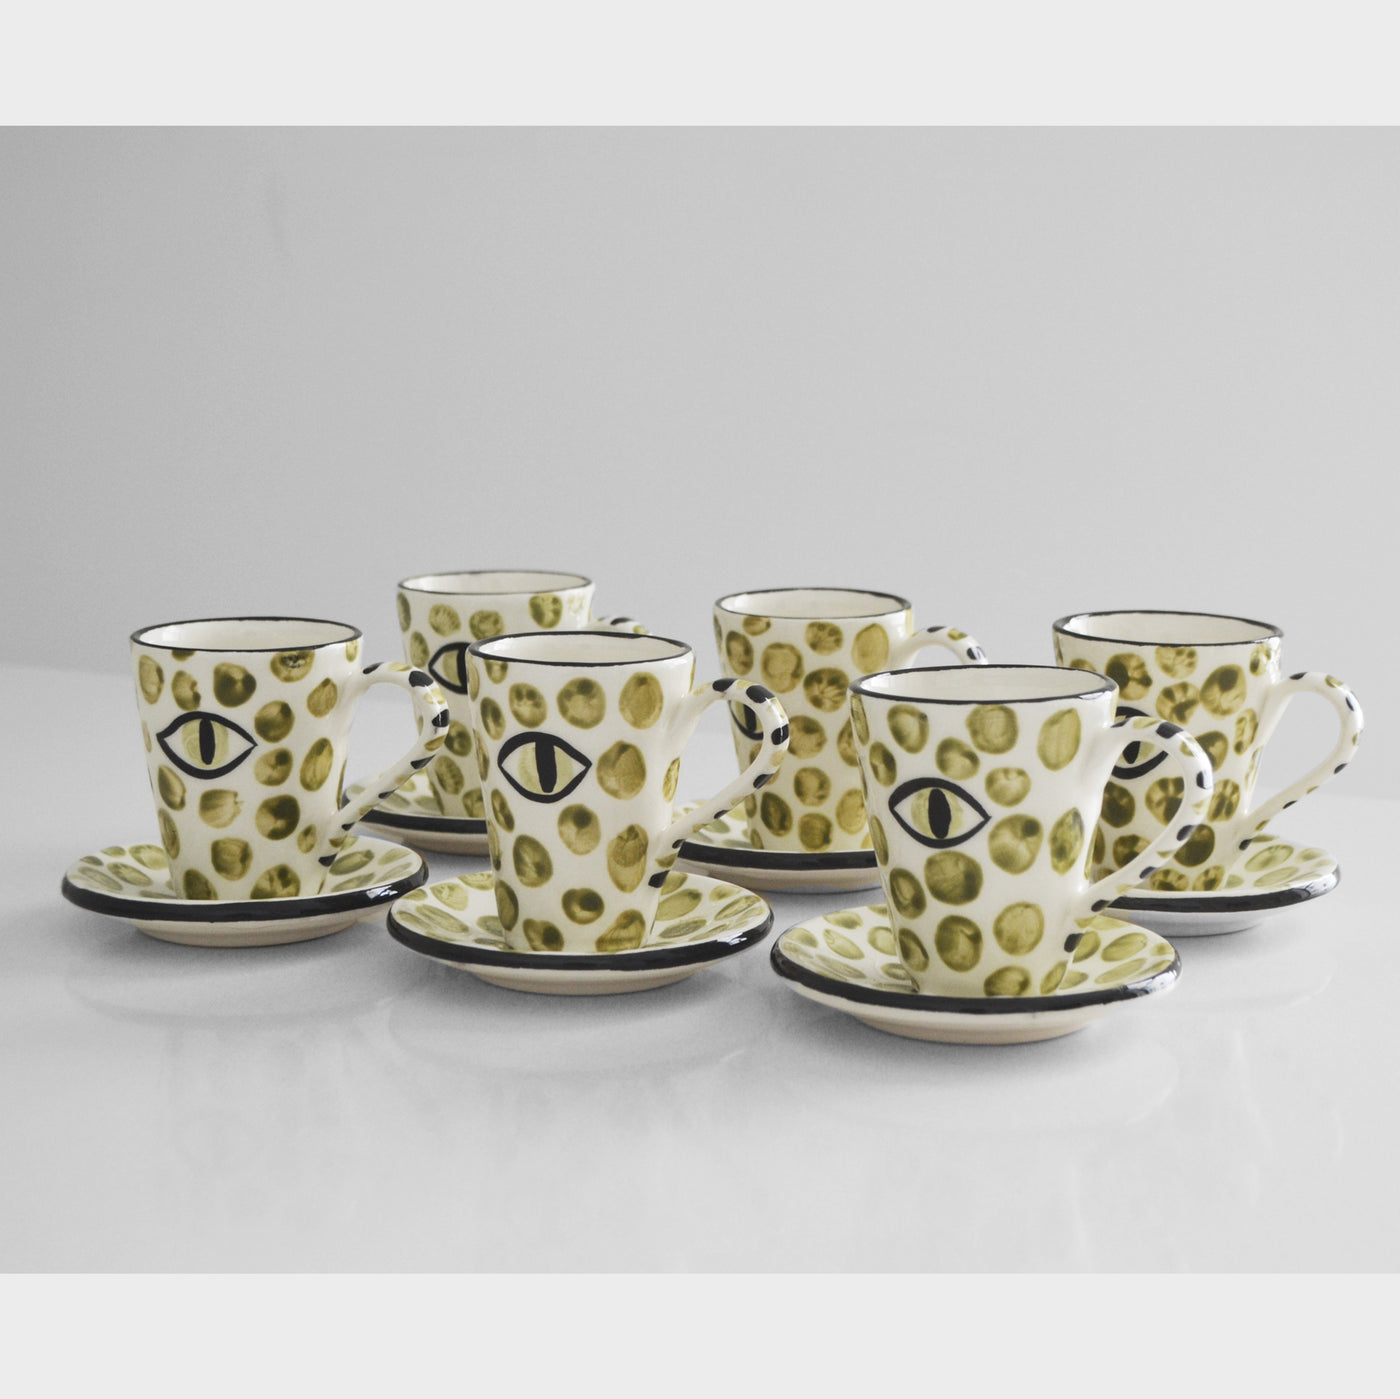 Dawn Polka Dots Espresso Cups Khaki (set of 6) - Ileana Makri